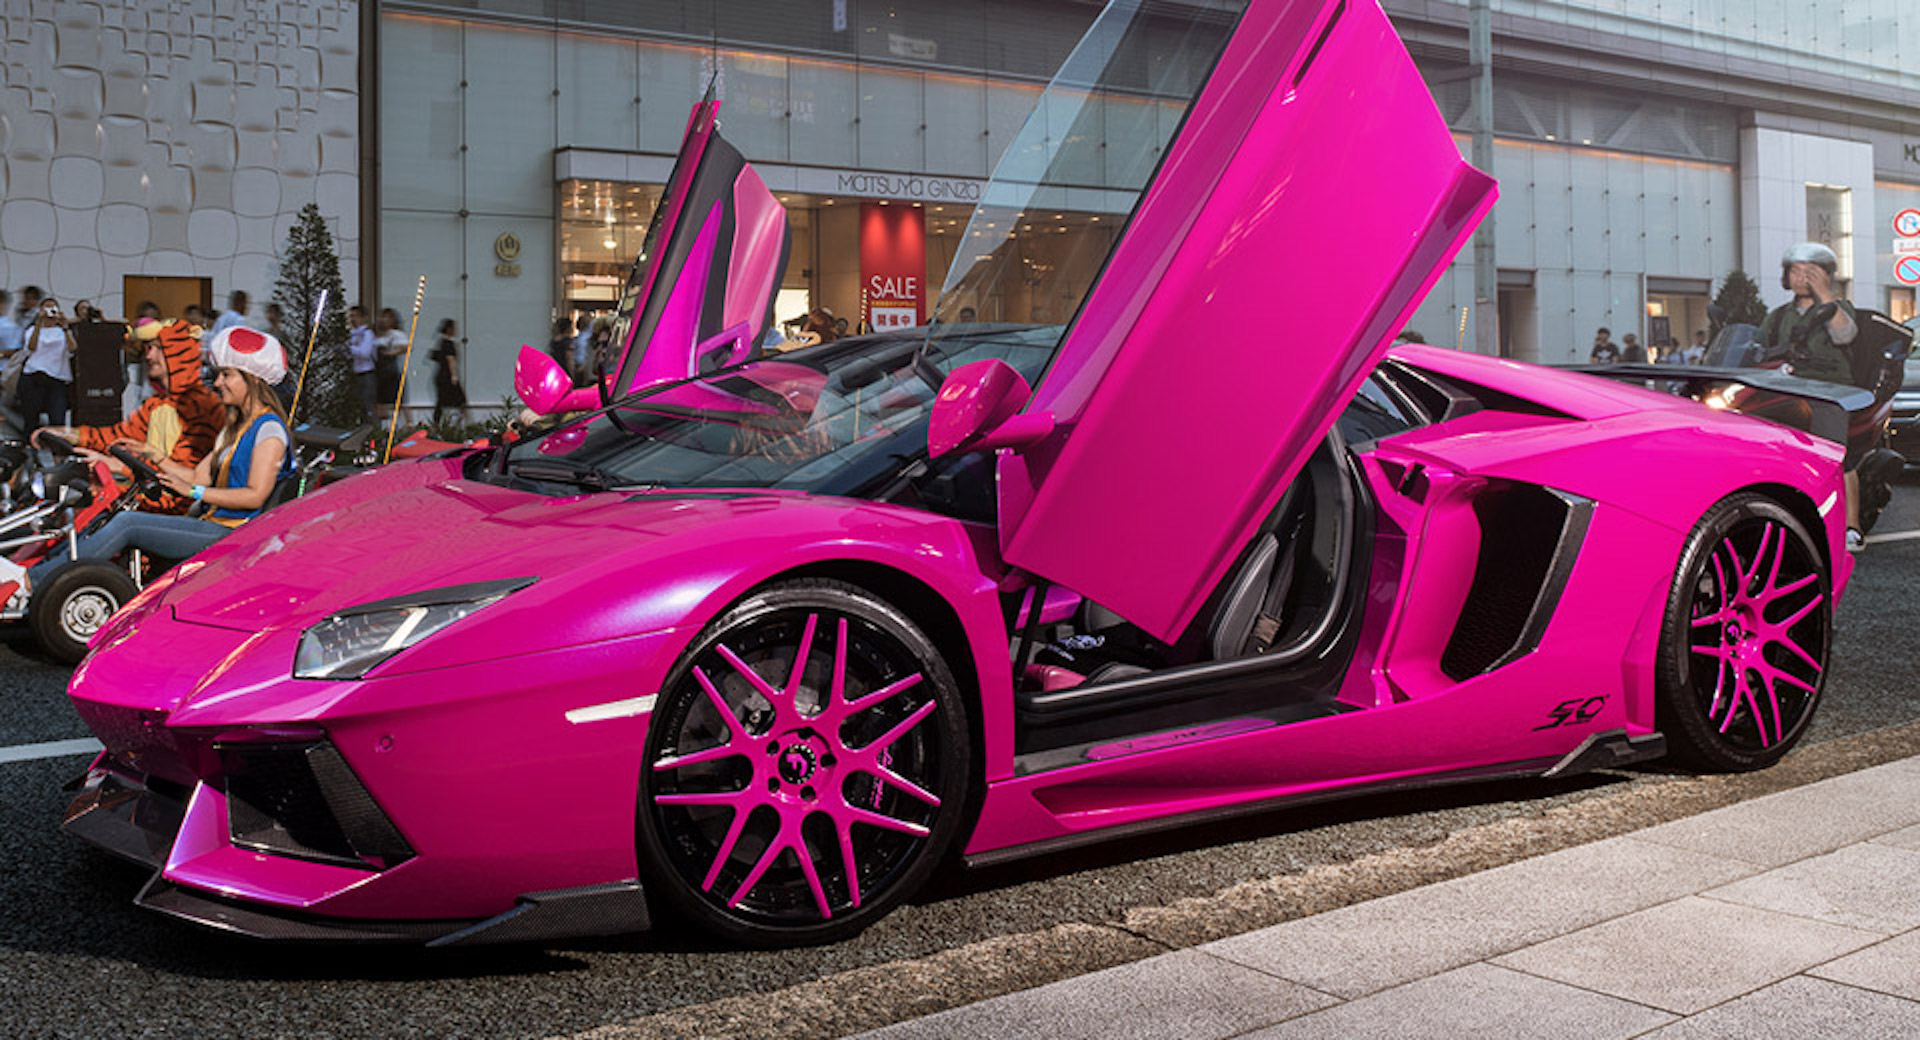 Видео машин цвета. Ламборджини авентадор розовая. Lamborghini Aventador розовый. Розовый Lamborghini Aventador, Lamborghini. Ламборджини авентадор кабриолет фиолетовый.